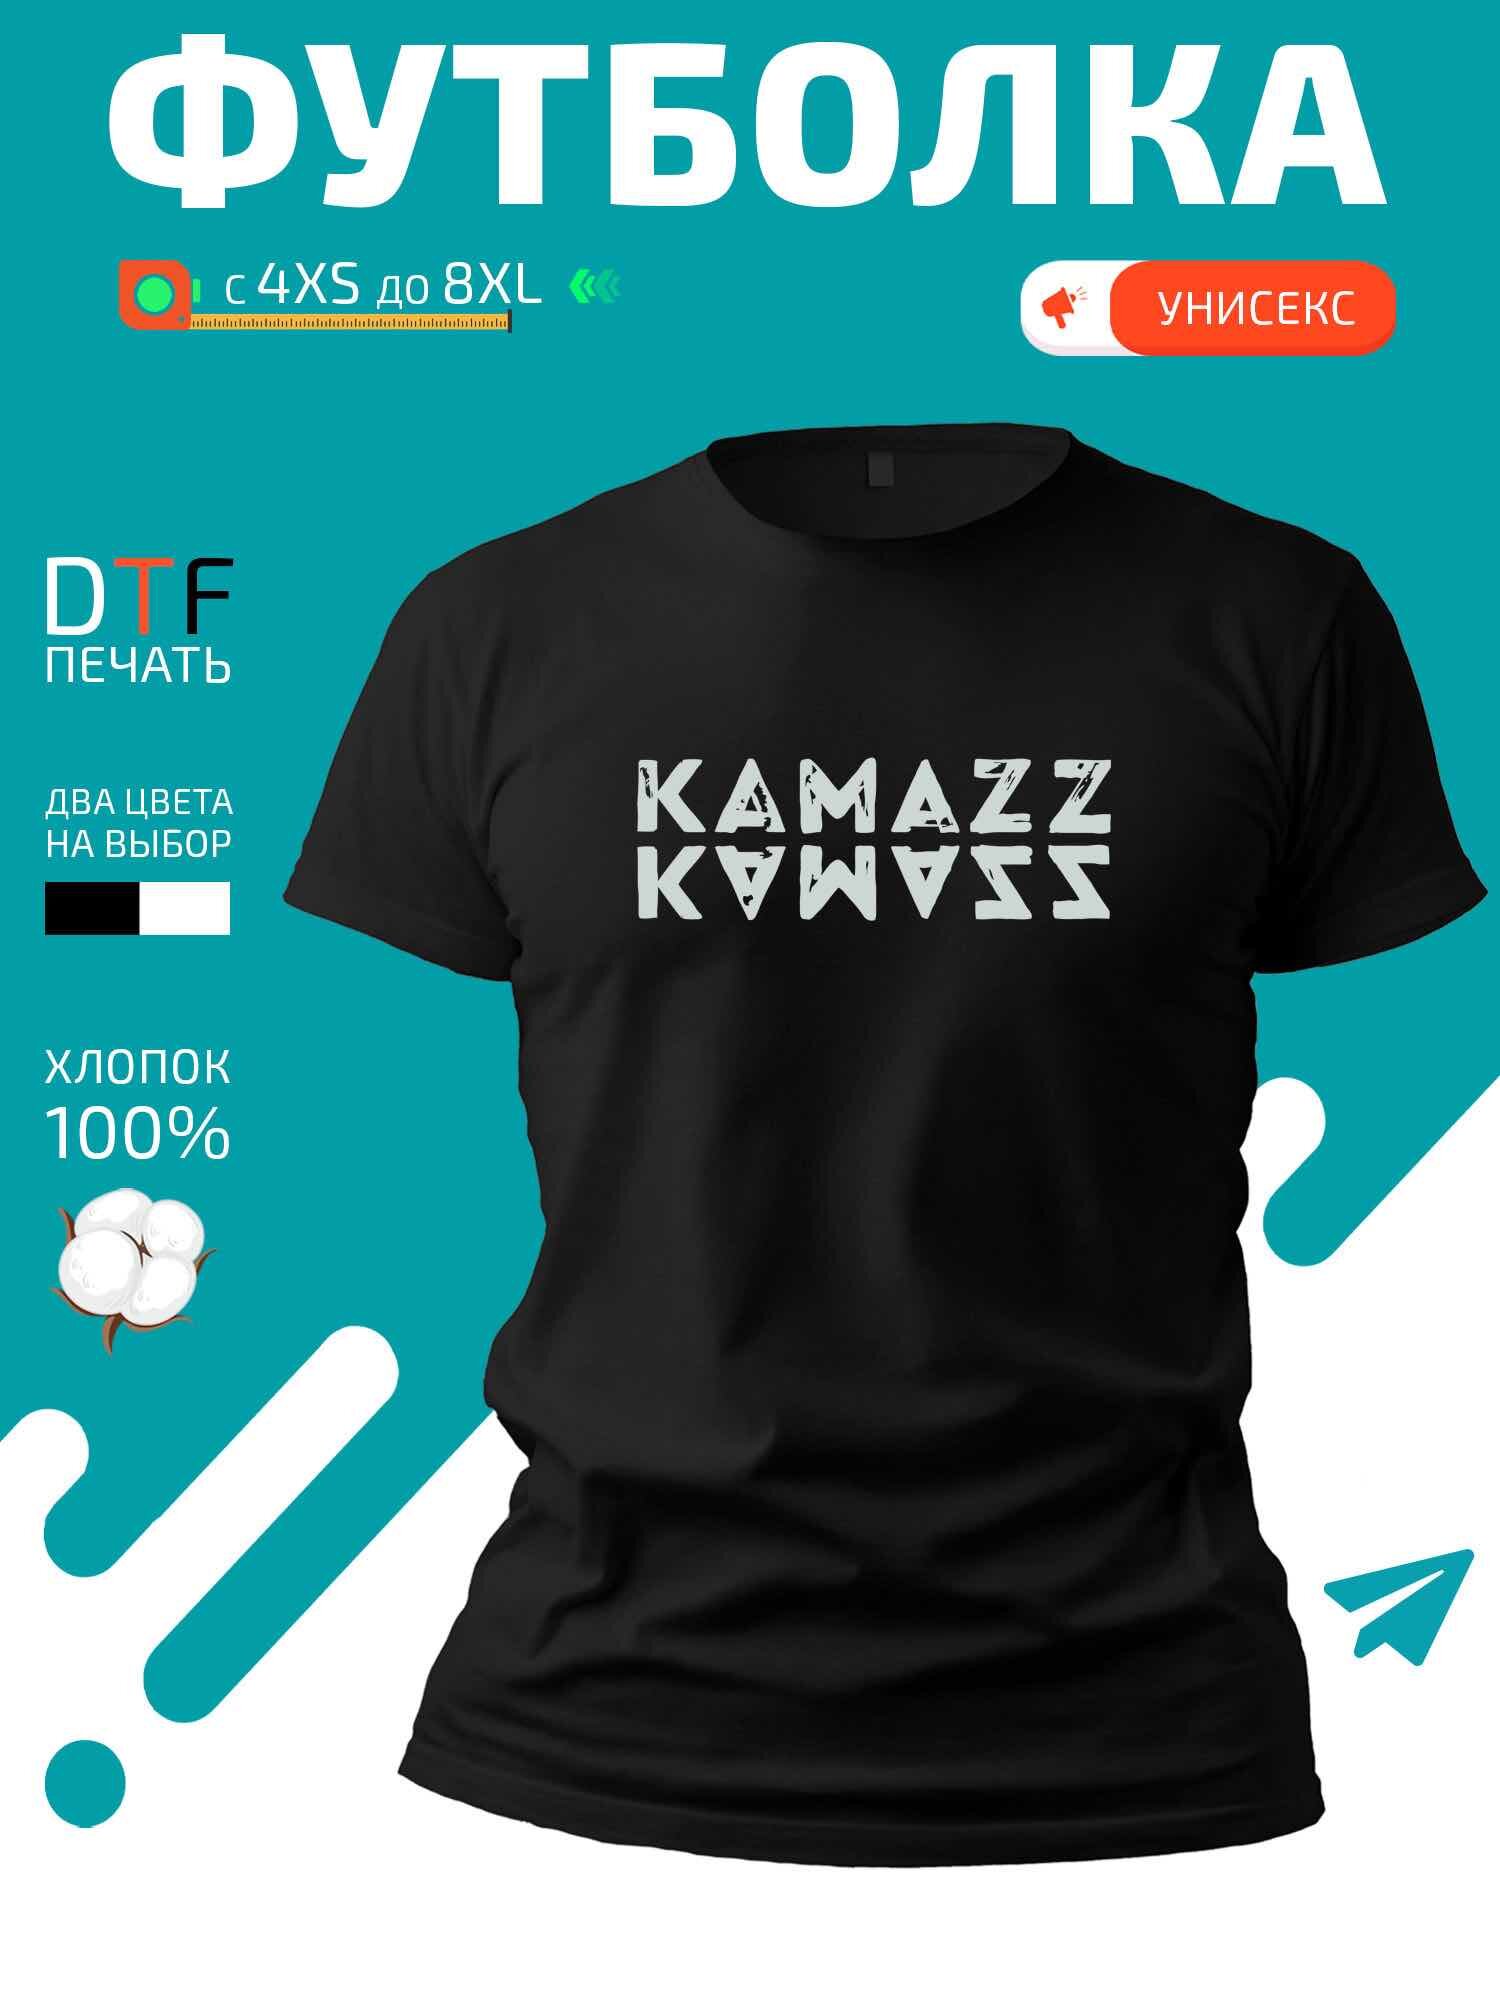 Футболка логотип Kamazz